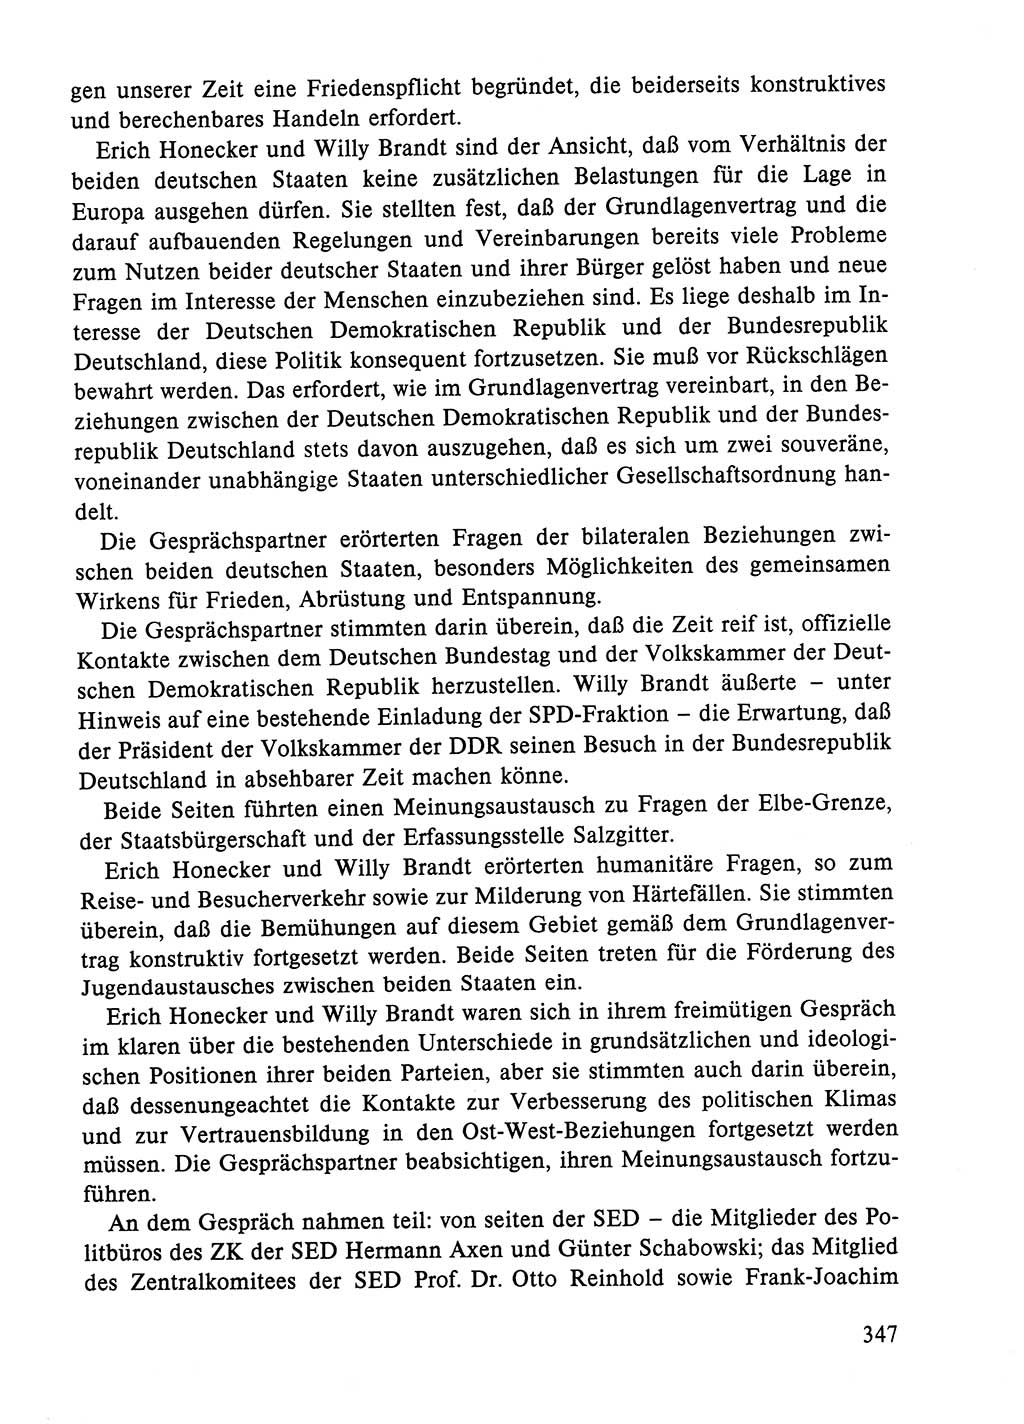 Dokumente der Sozialistischen Einheitspartei Deutschlands (SED) [Deutsche Demokratische Republik (DDR)] 1984-1985, Seite 347 (Dok. SED DDR 1984-1985, S. 347)